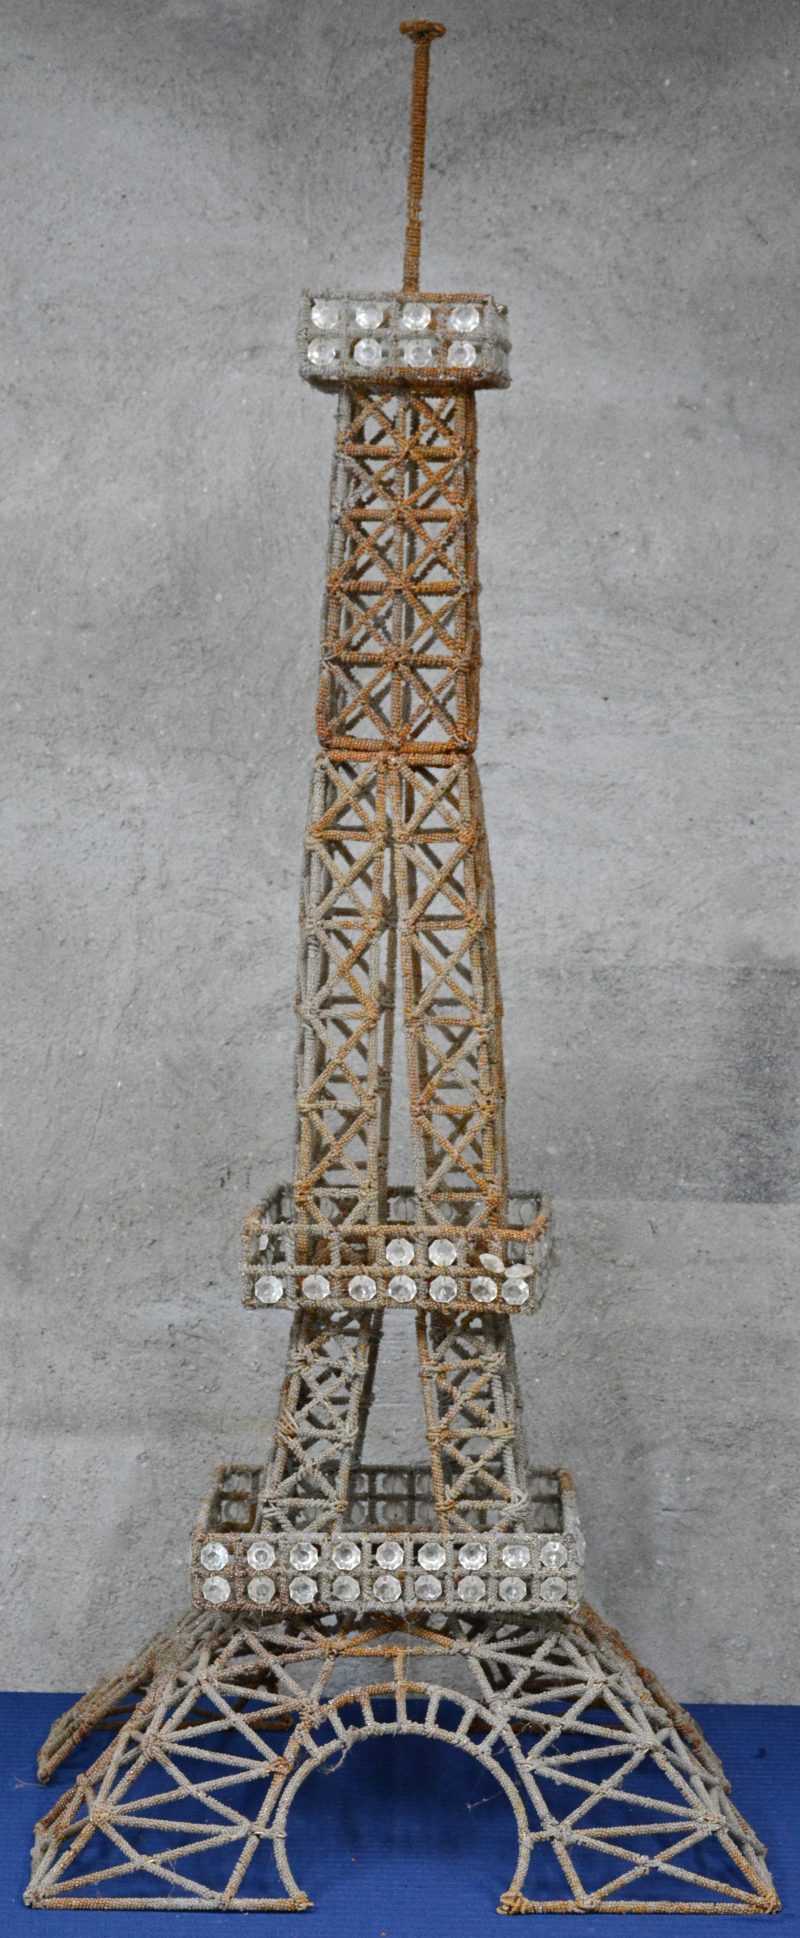 Een model van de Eiffeltoren, bestaande uit drie delen van metaaldraad en versierd met doorschijnende kraaltjes van kunststof.